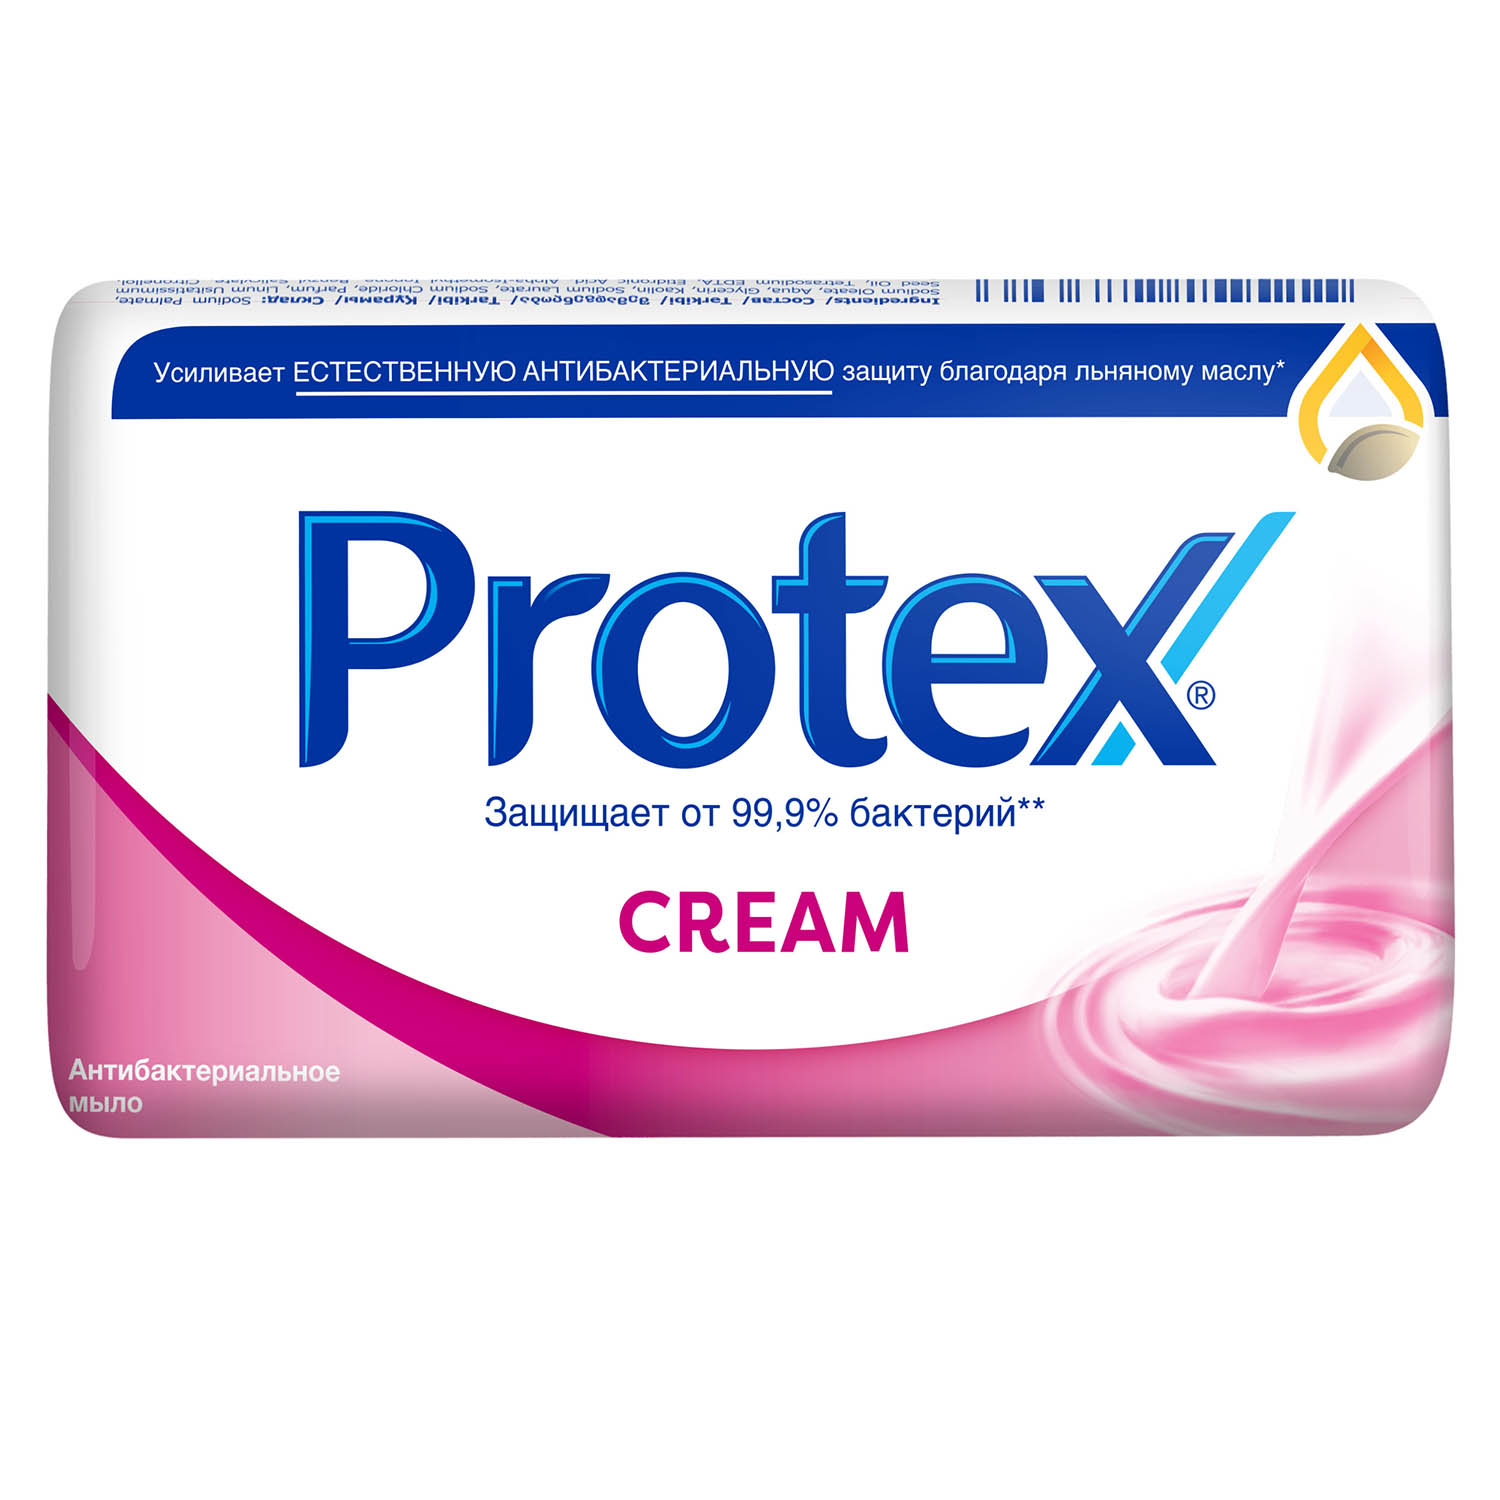 Мыло туалетное Protex Cream антибактериальное, 150 г мыло туалетное protex fresh антибактериальное 90 г